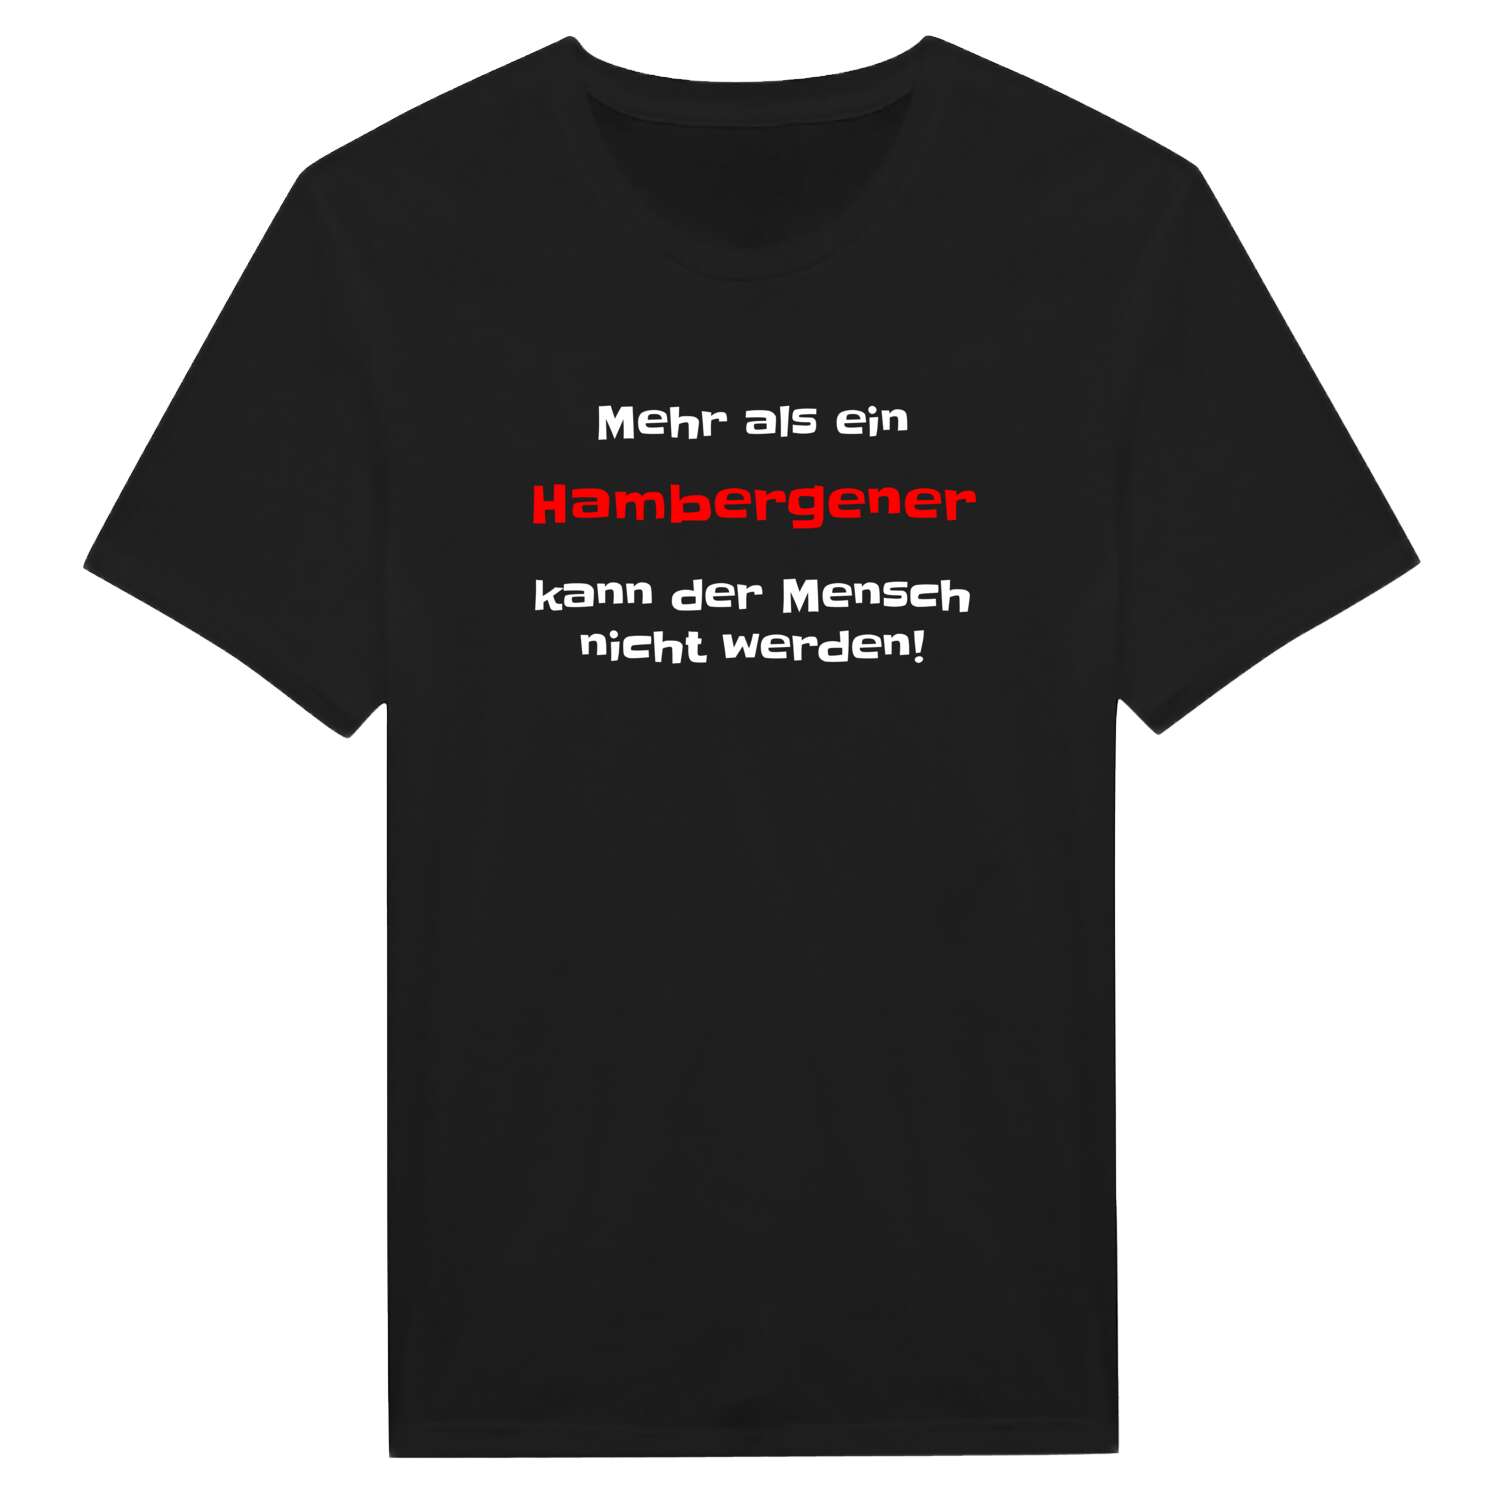 Hambergen T-Shirt »Mehr als ein«